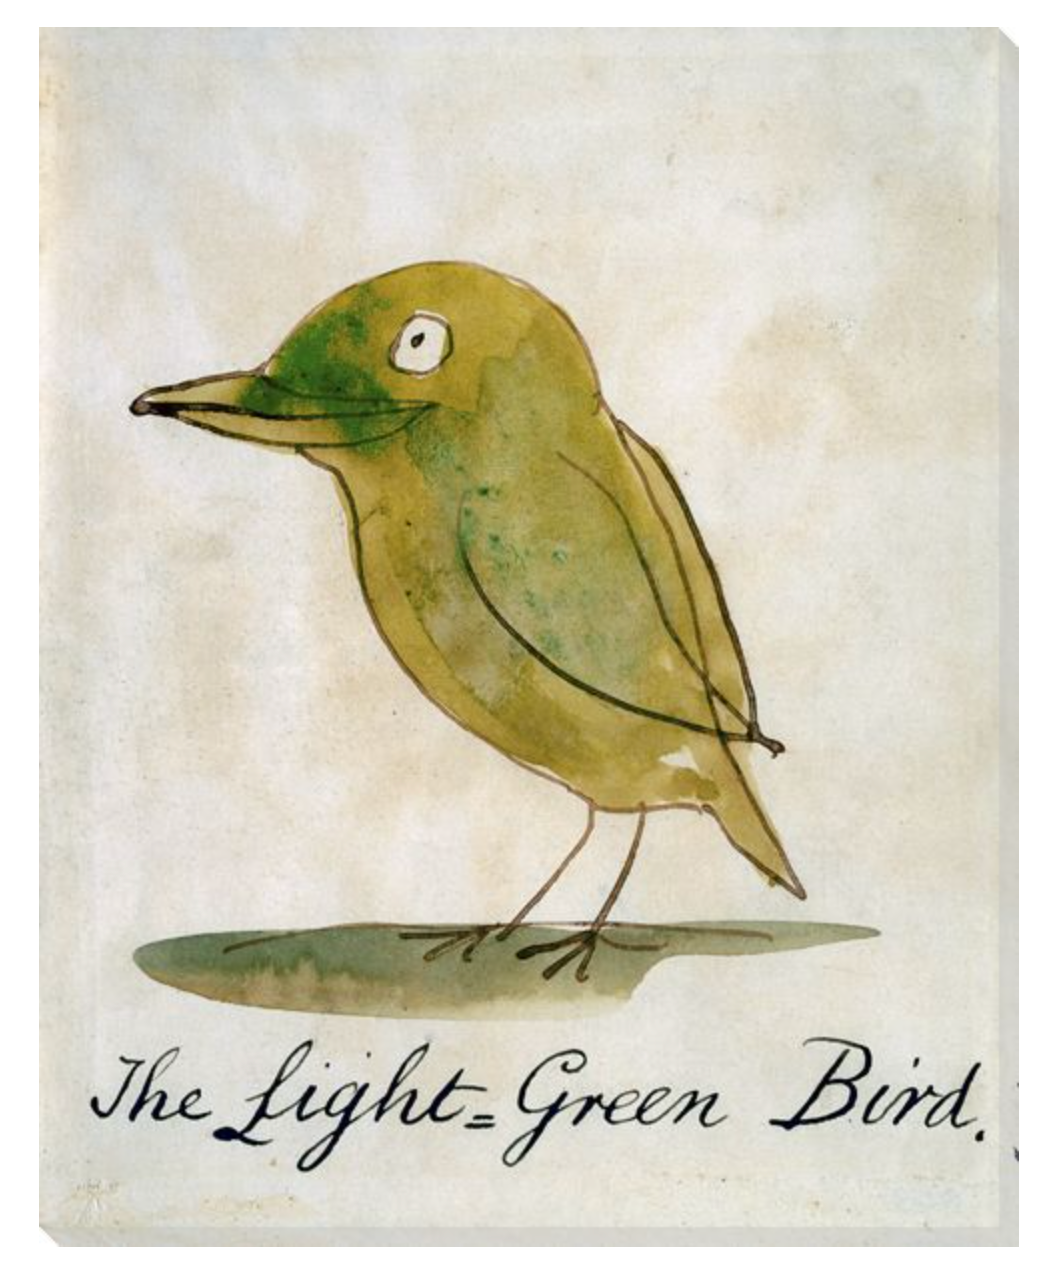 THE LIGHT GREEN BIRD